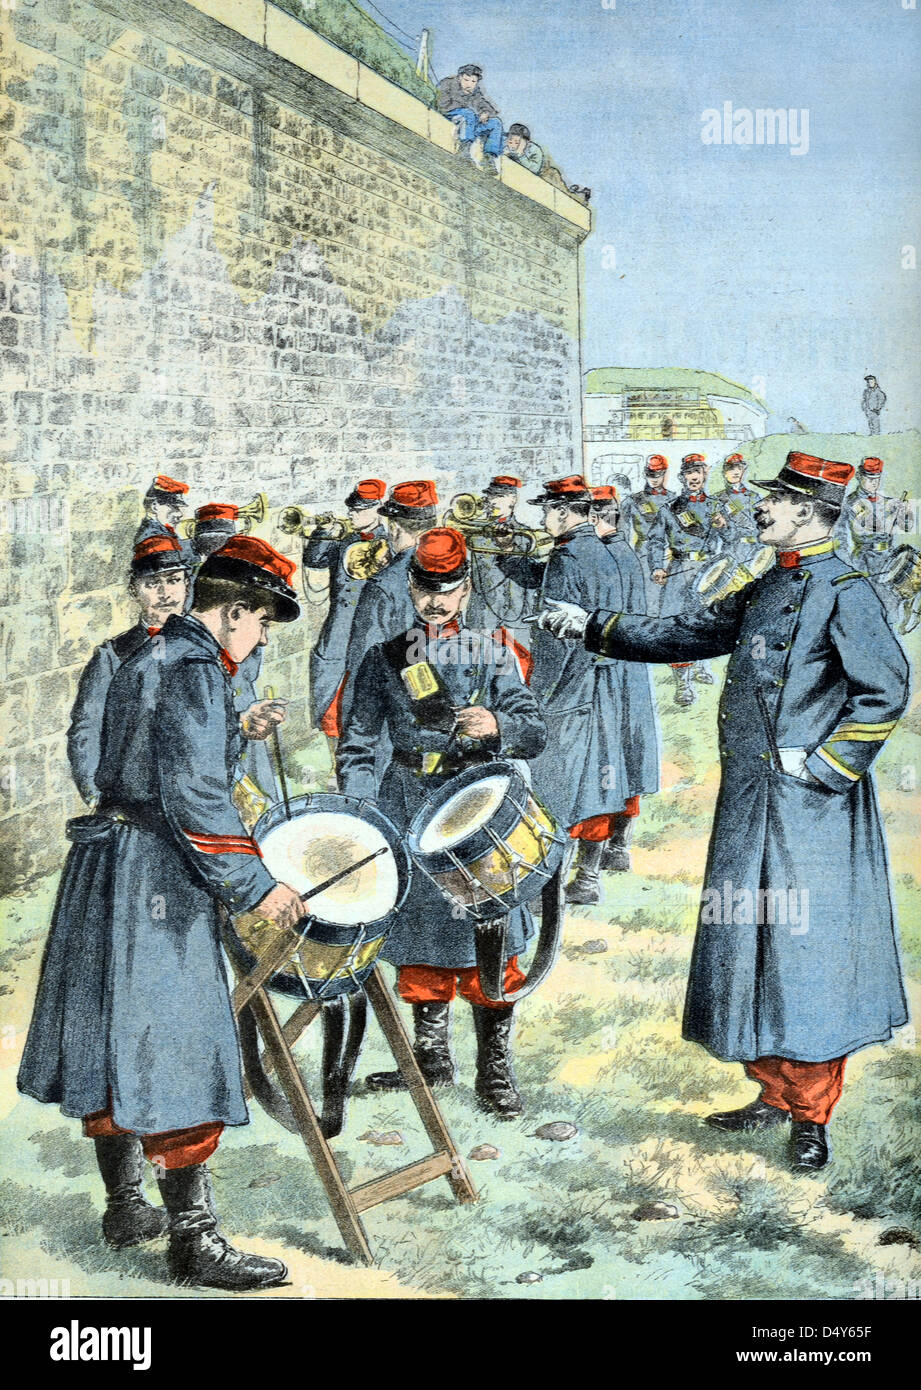 Militärtrommler oder Lerntrommler der französischen Armee an der Drum School France (Mai 1903) Vintage Gravur oder Illustration Stockfoto